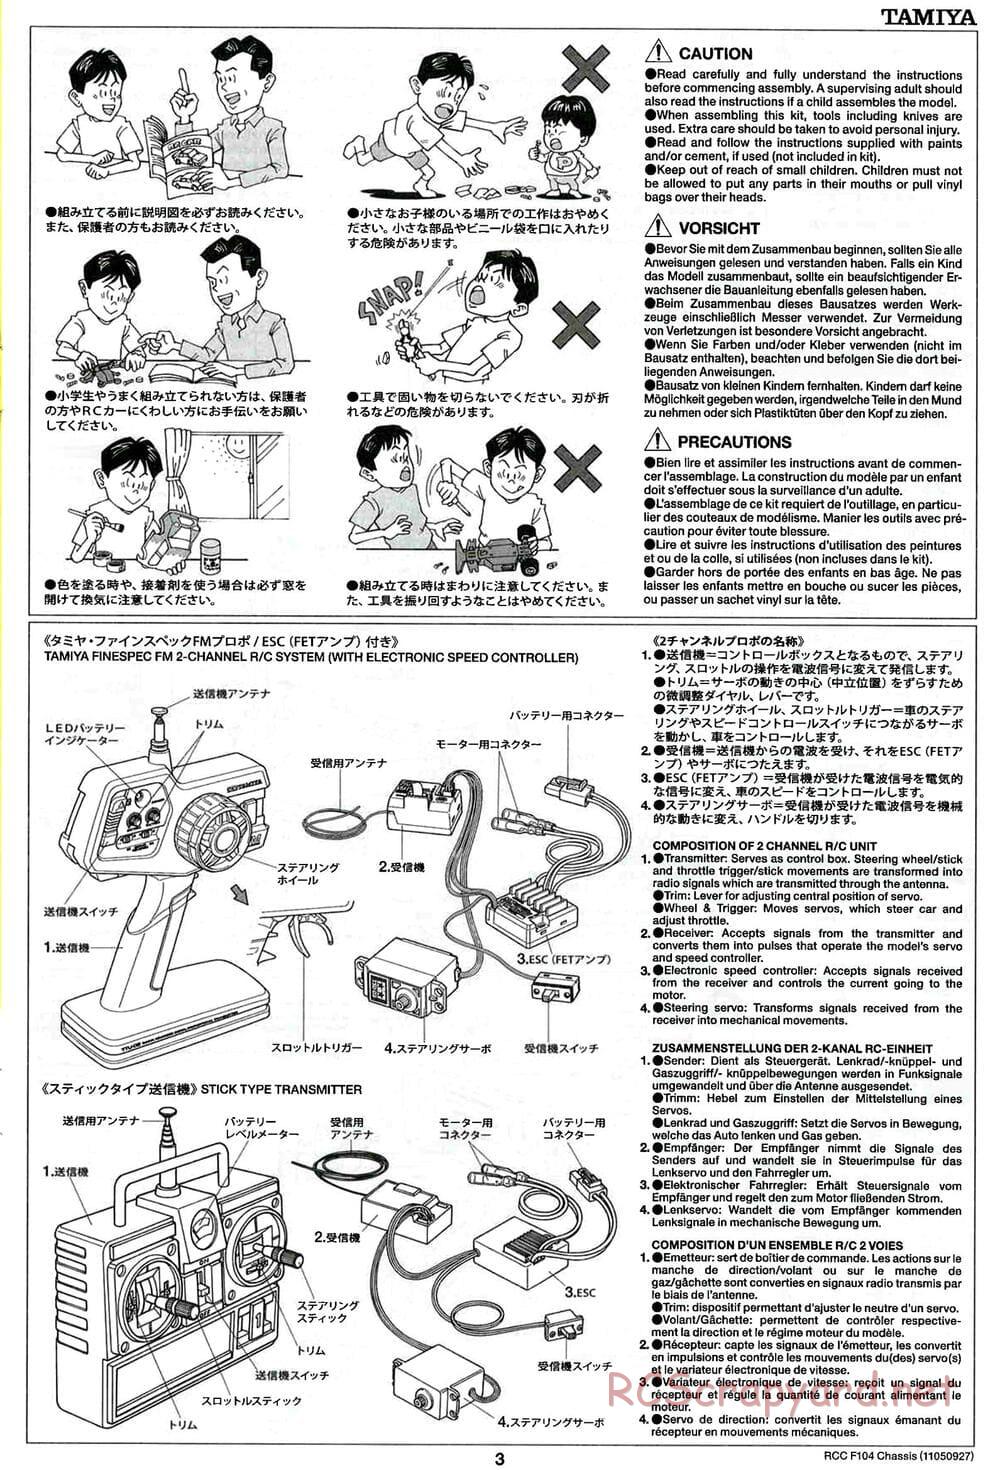 Tamiya - F104 Chassis - Manual - Page 3